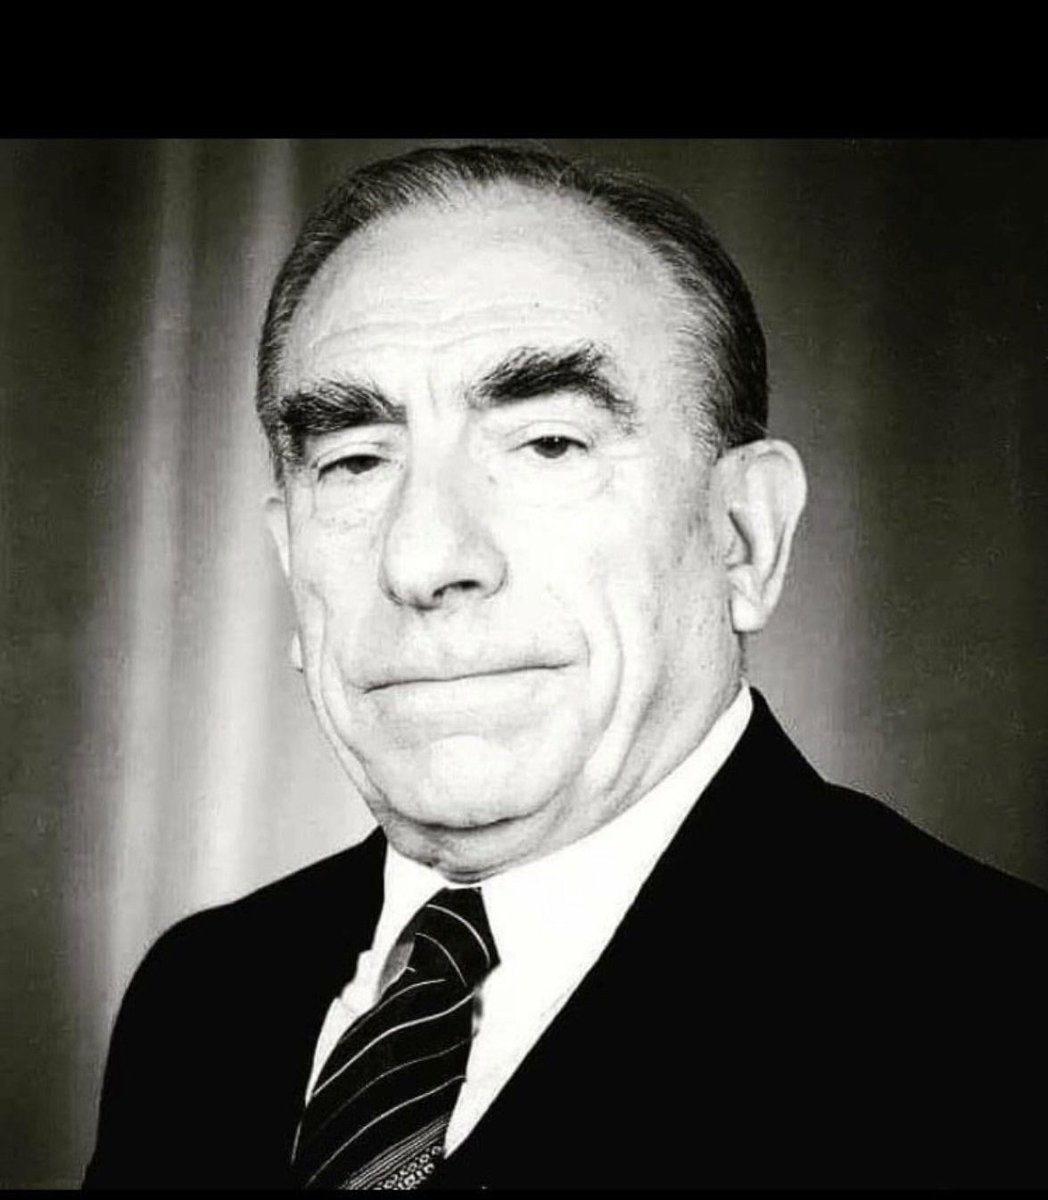 Milliyetçi Hareket Partisi'nin kurucusu, devlet ve dava adamı #AlparslanTürkeş'i vefatının 27. yıl dönümünde rahmet ve saygıyla anıyorum.